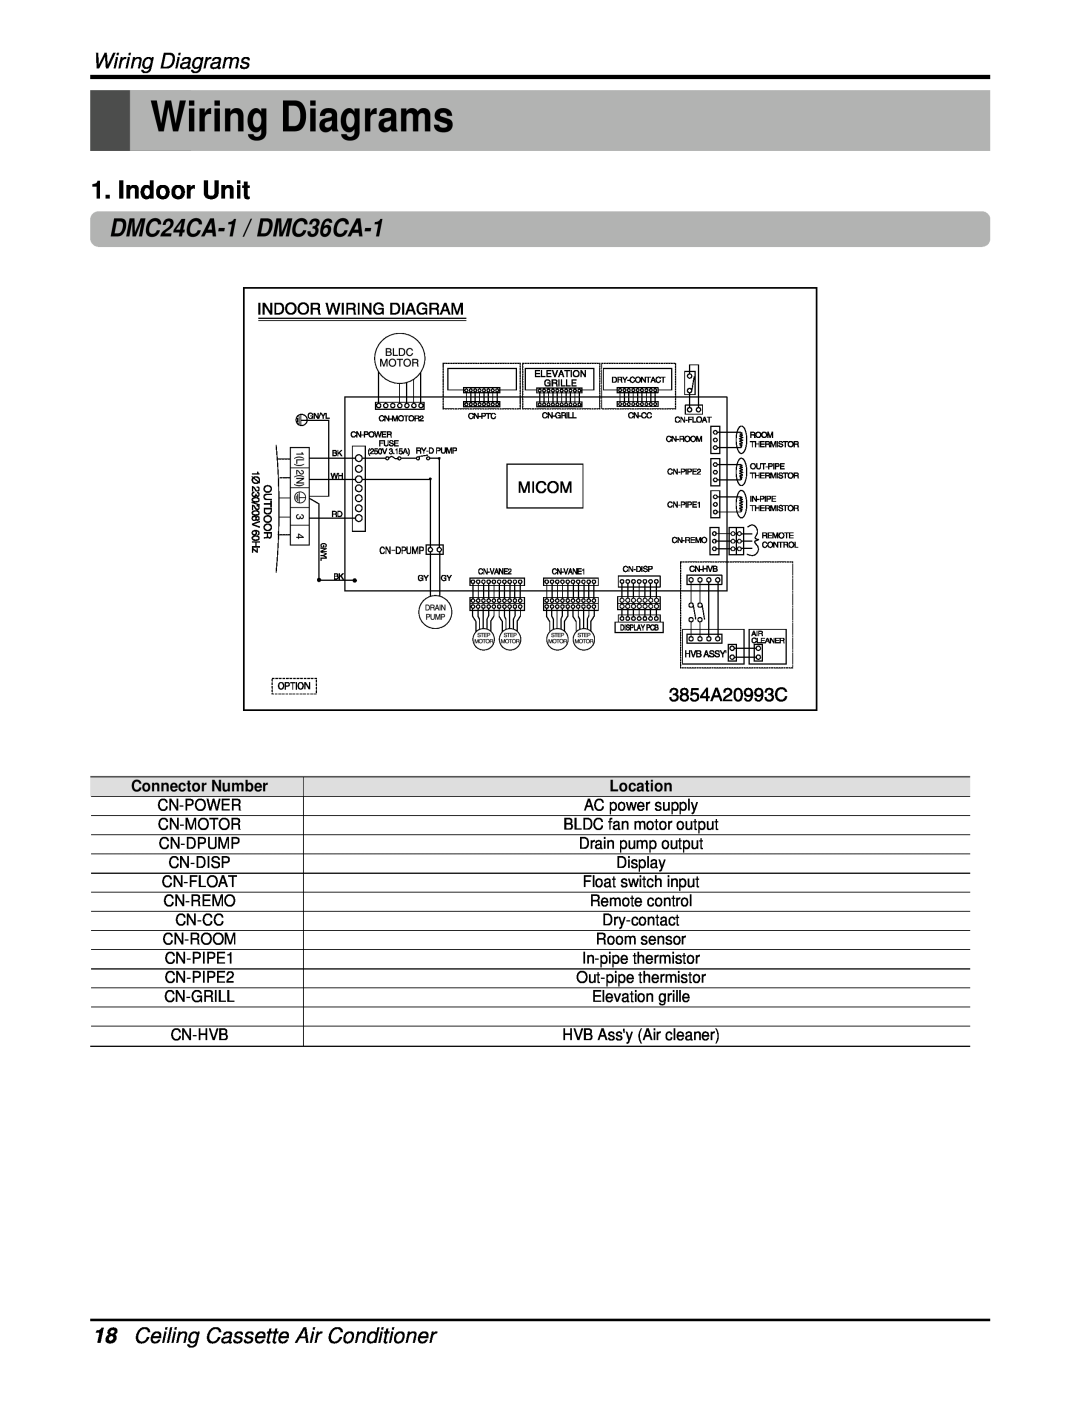 Heat Controller manual Wiring Diagrams, Indoor Unit, DMC24CA-1 / DMC36CA-1, 18Ceiling Cassette Air Conditioner, Location 